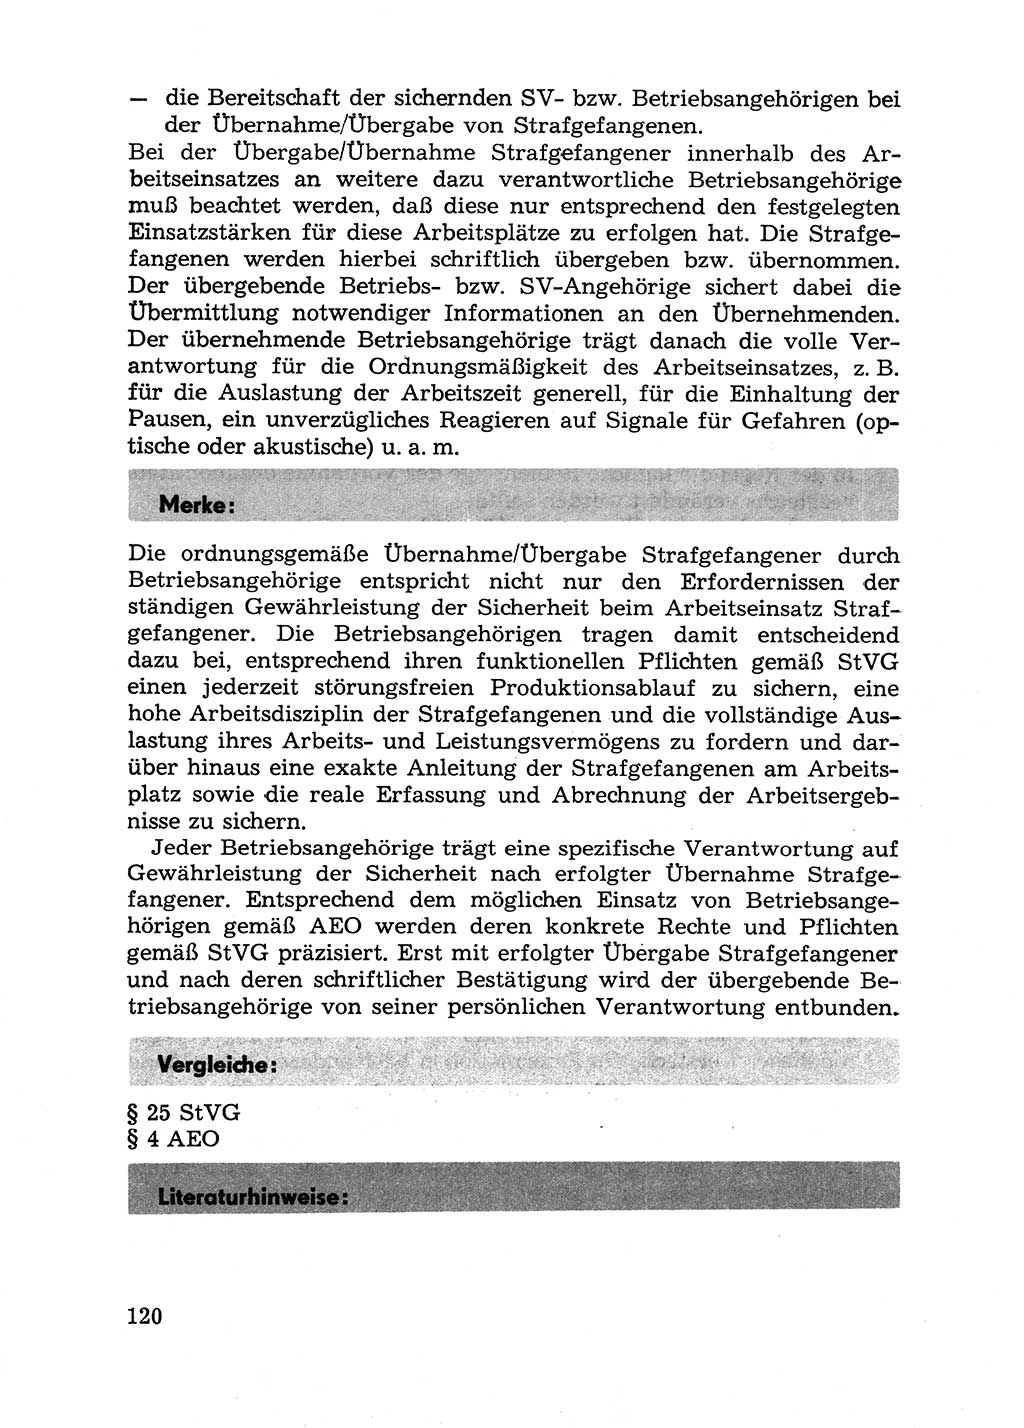 Handbuch für Betriebsangehörige, Abteilung Strafvollzug (SV) [Ministerium des Innern (MdI) Deutsche Demokratische Republik (DDR)] 1981, Seite 120 (Hb. BA Abt. SV MdI DDR 1981, S. 120)